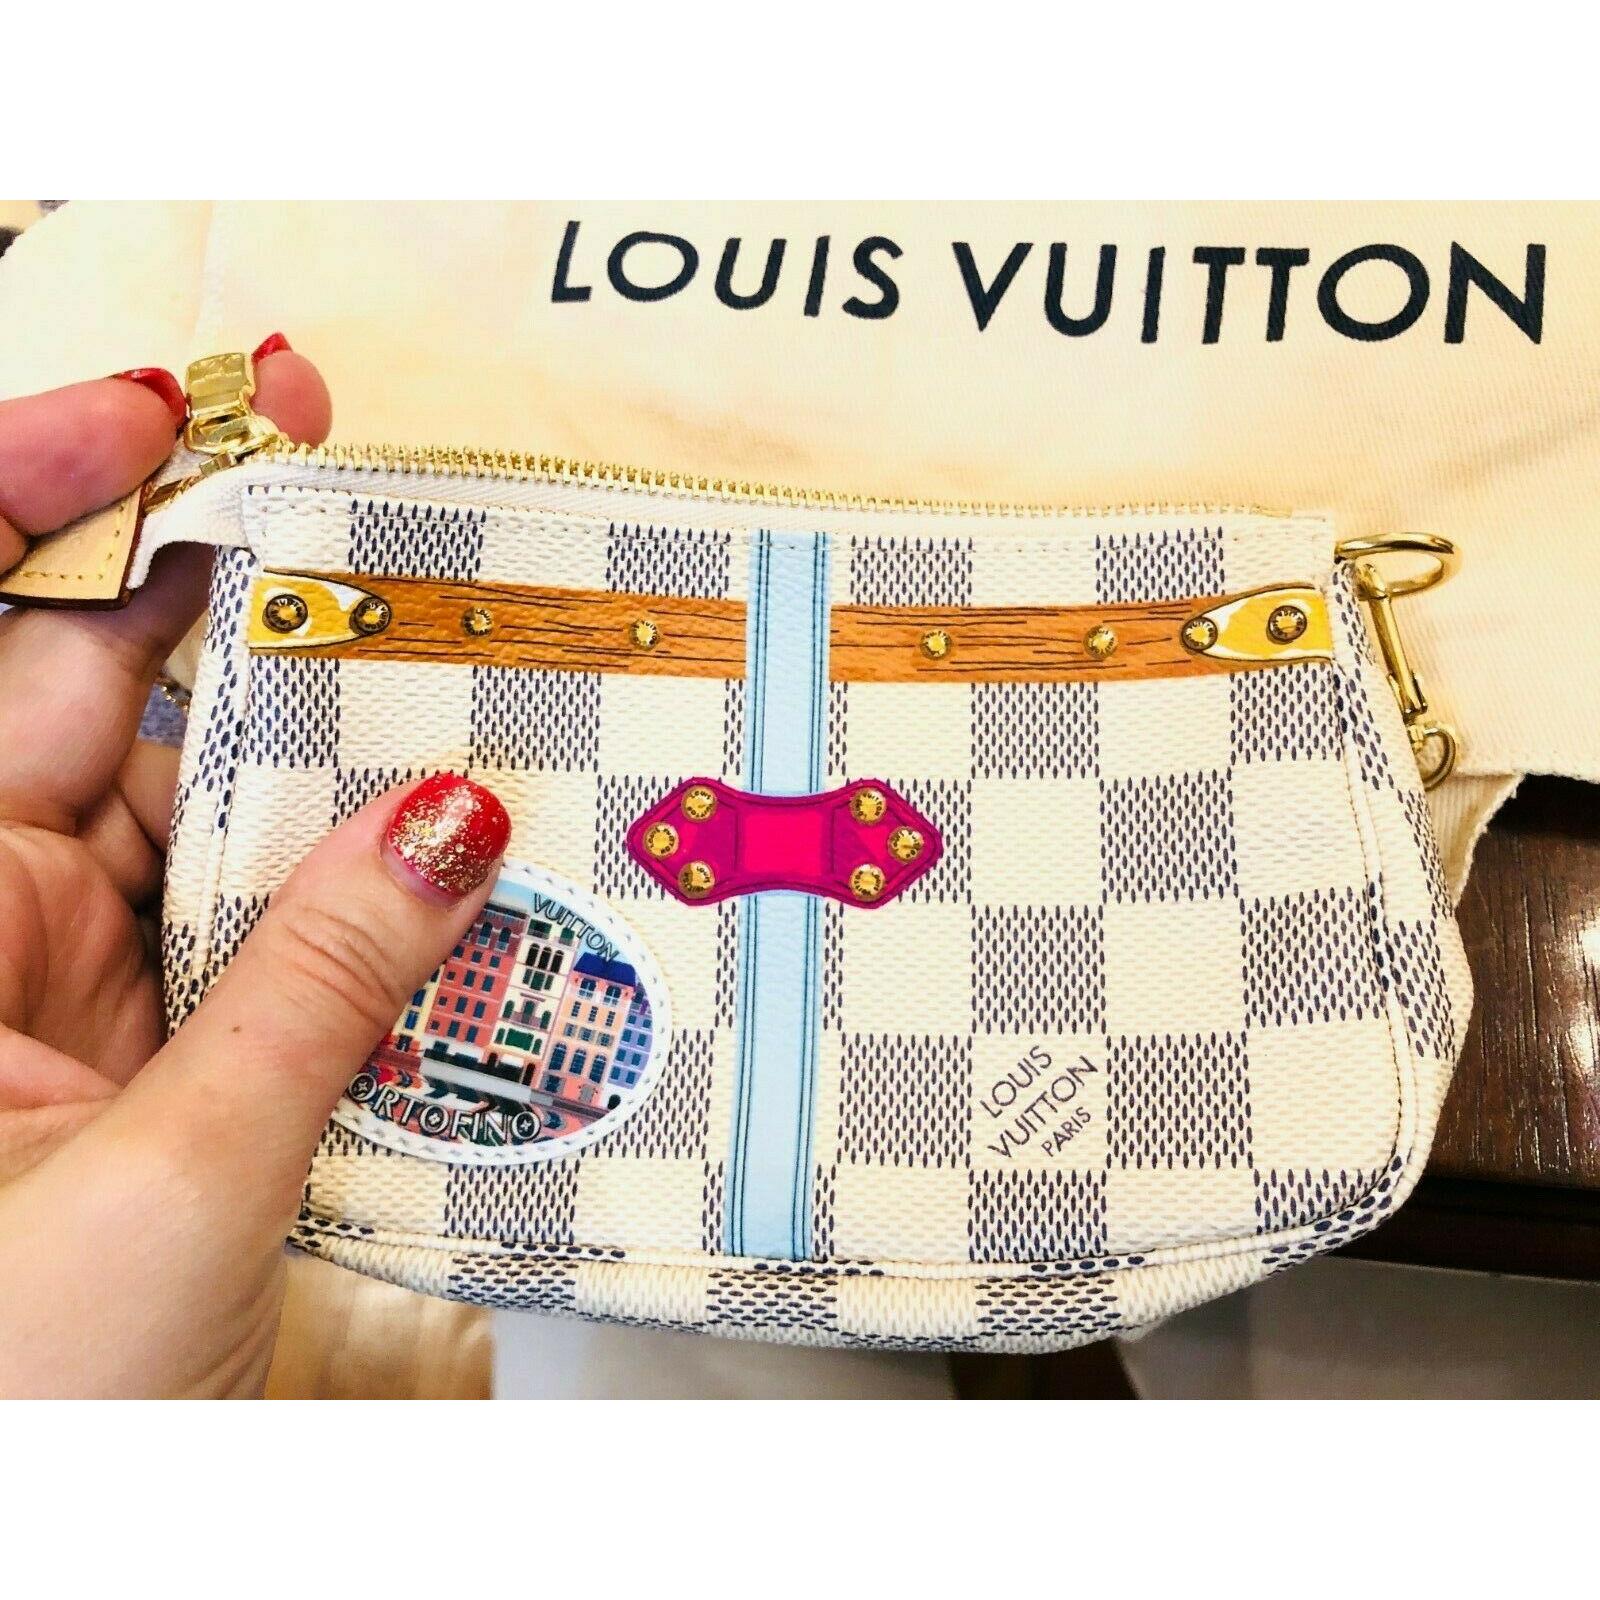 Portofino Mini Pochette Accessories Louis Vuitton Damier Azur Trunk Bag Pouch